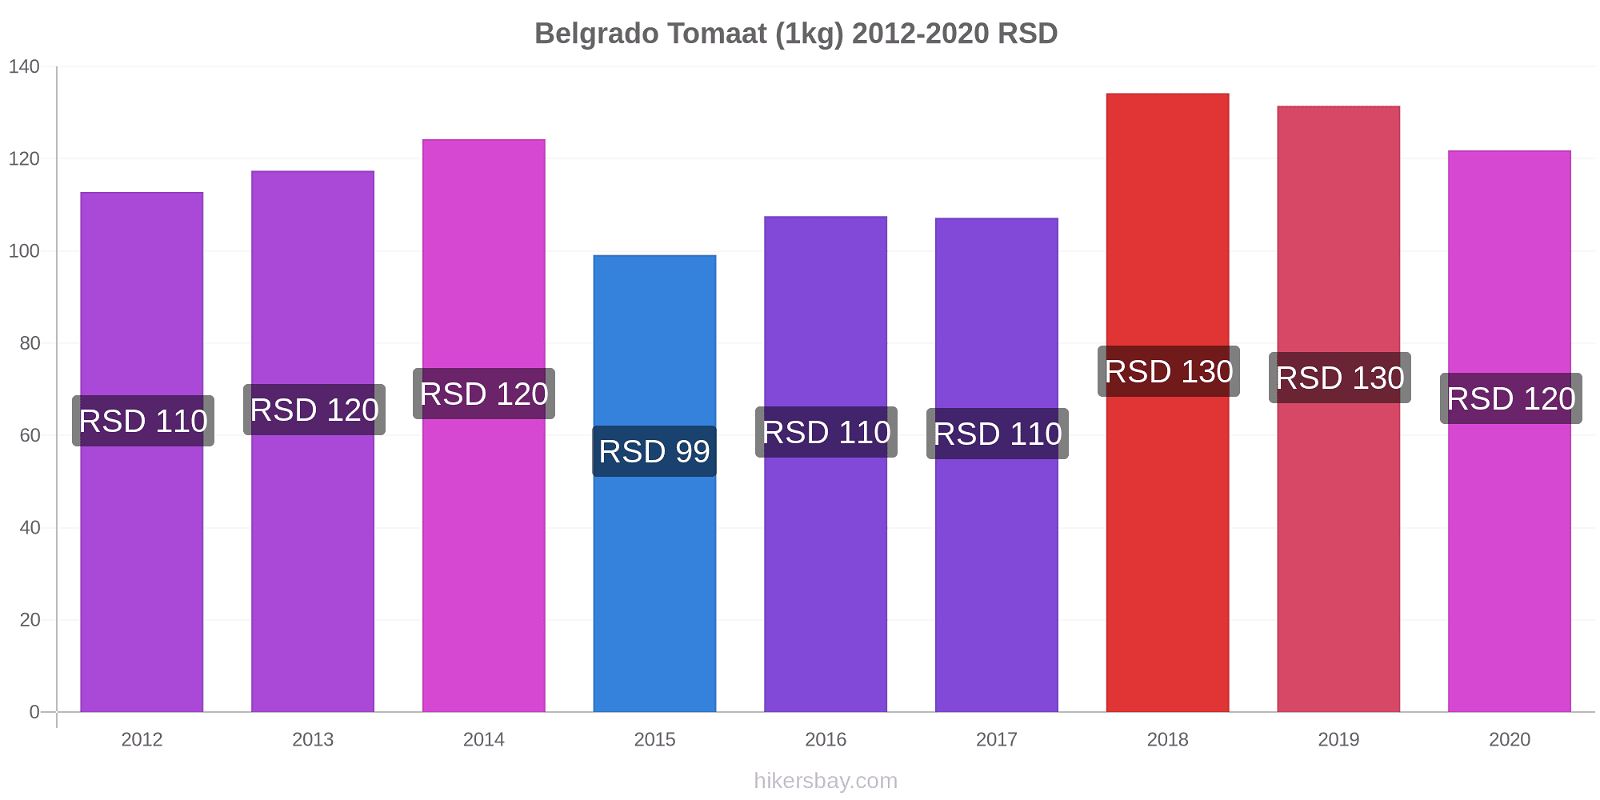 Belgrado prijswijzigingen Tomaat (1kg) hikersbay.com